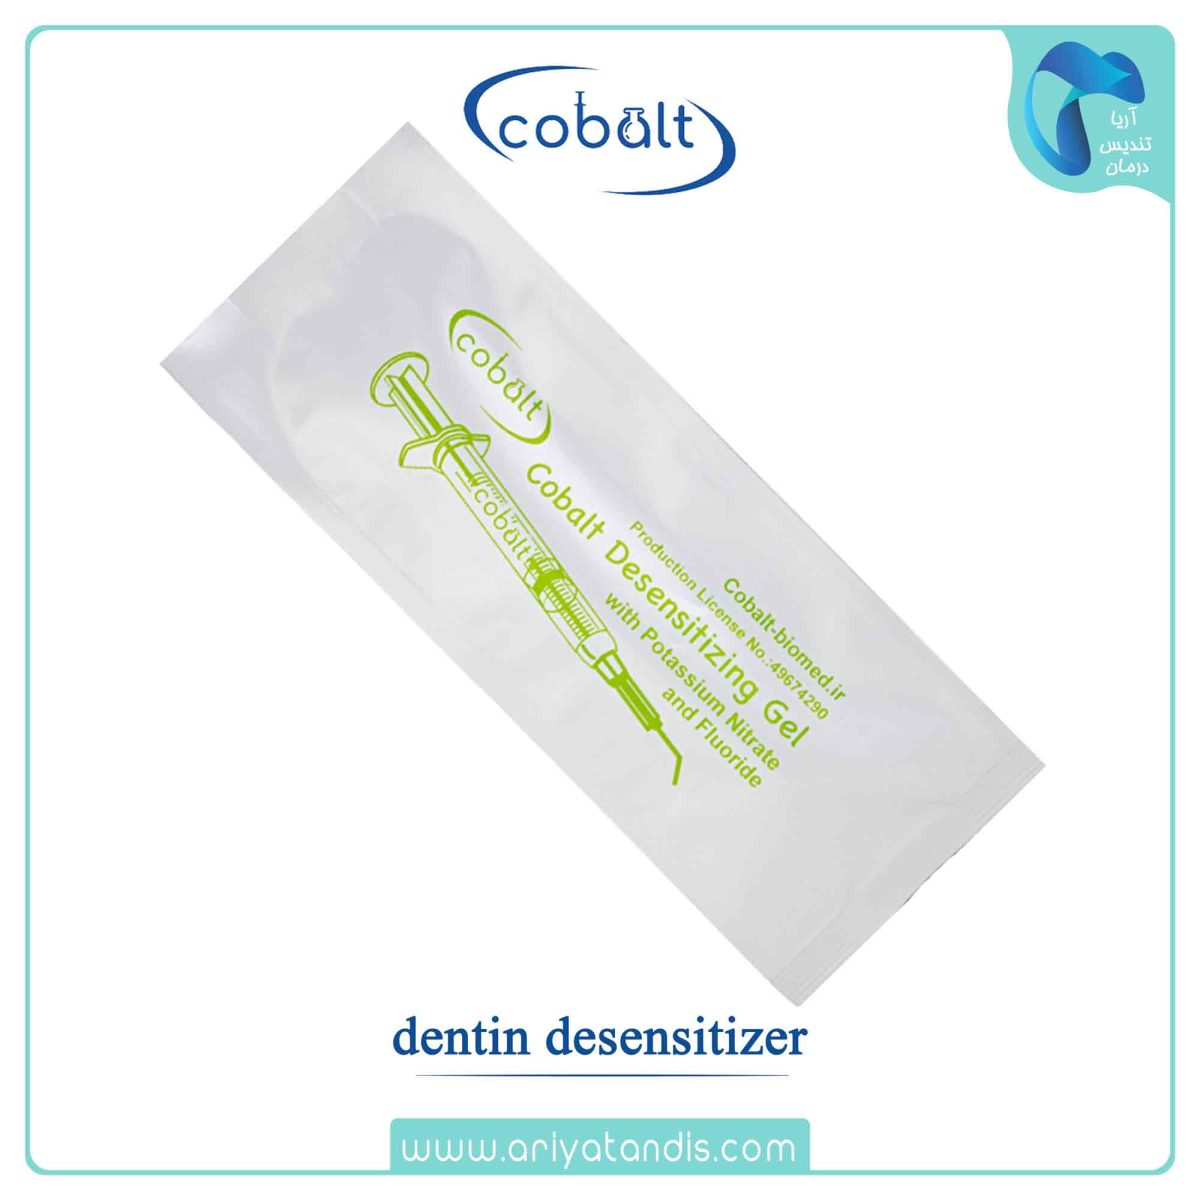 قیمت ژل ضد حساسیت کبالت، cobalt dentin desensitizer